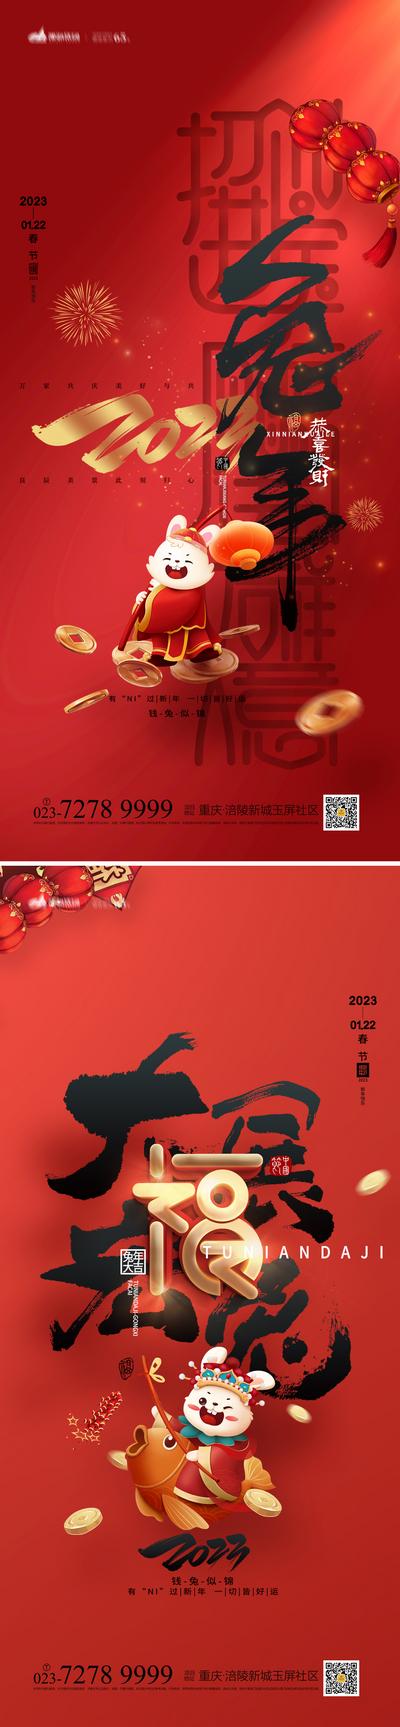 南门网 海报 地产 中国传统节日 春节 新春 兔年 2023 兔年大吉 喜庆